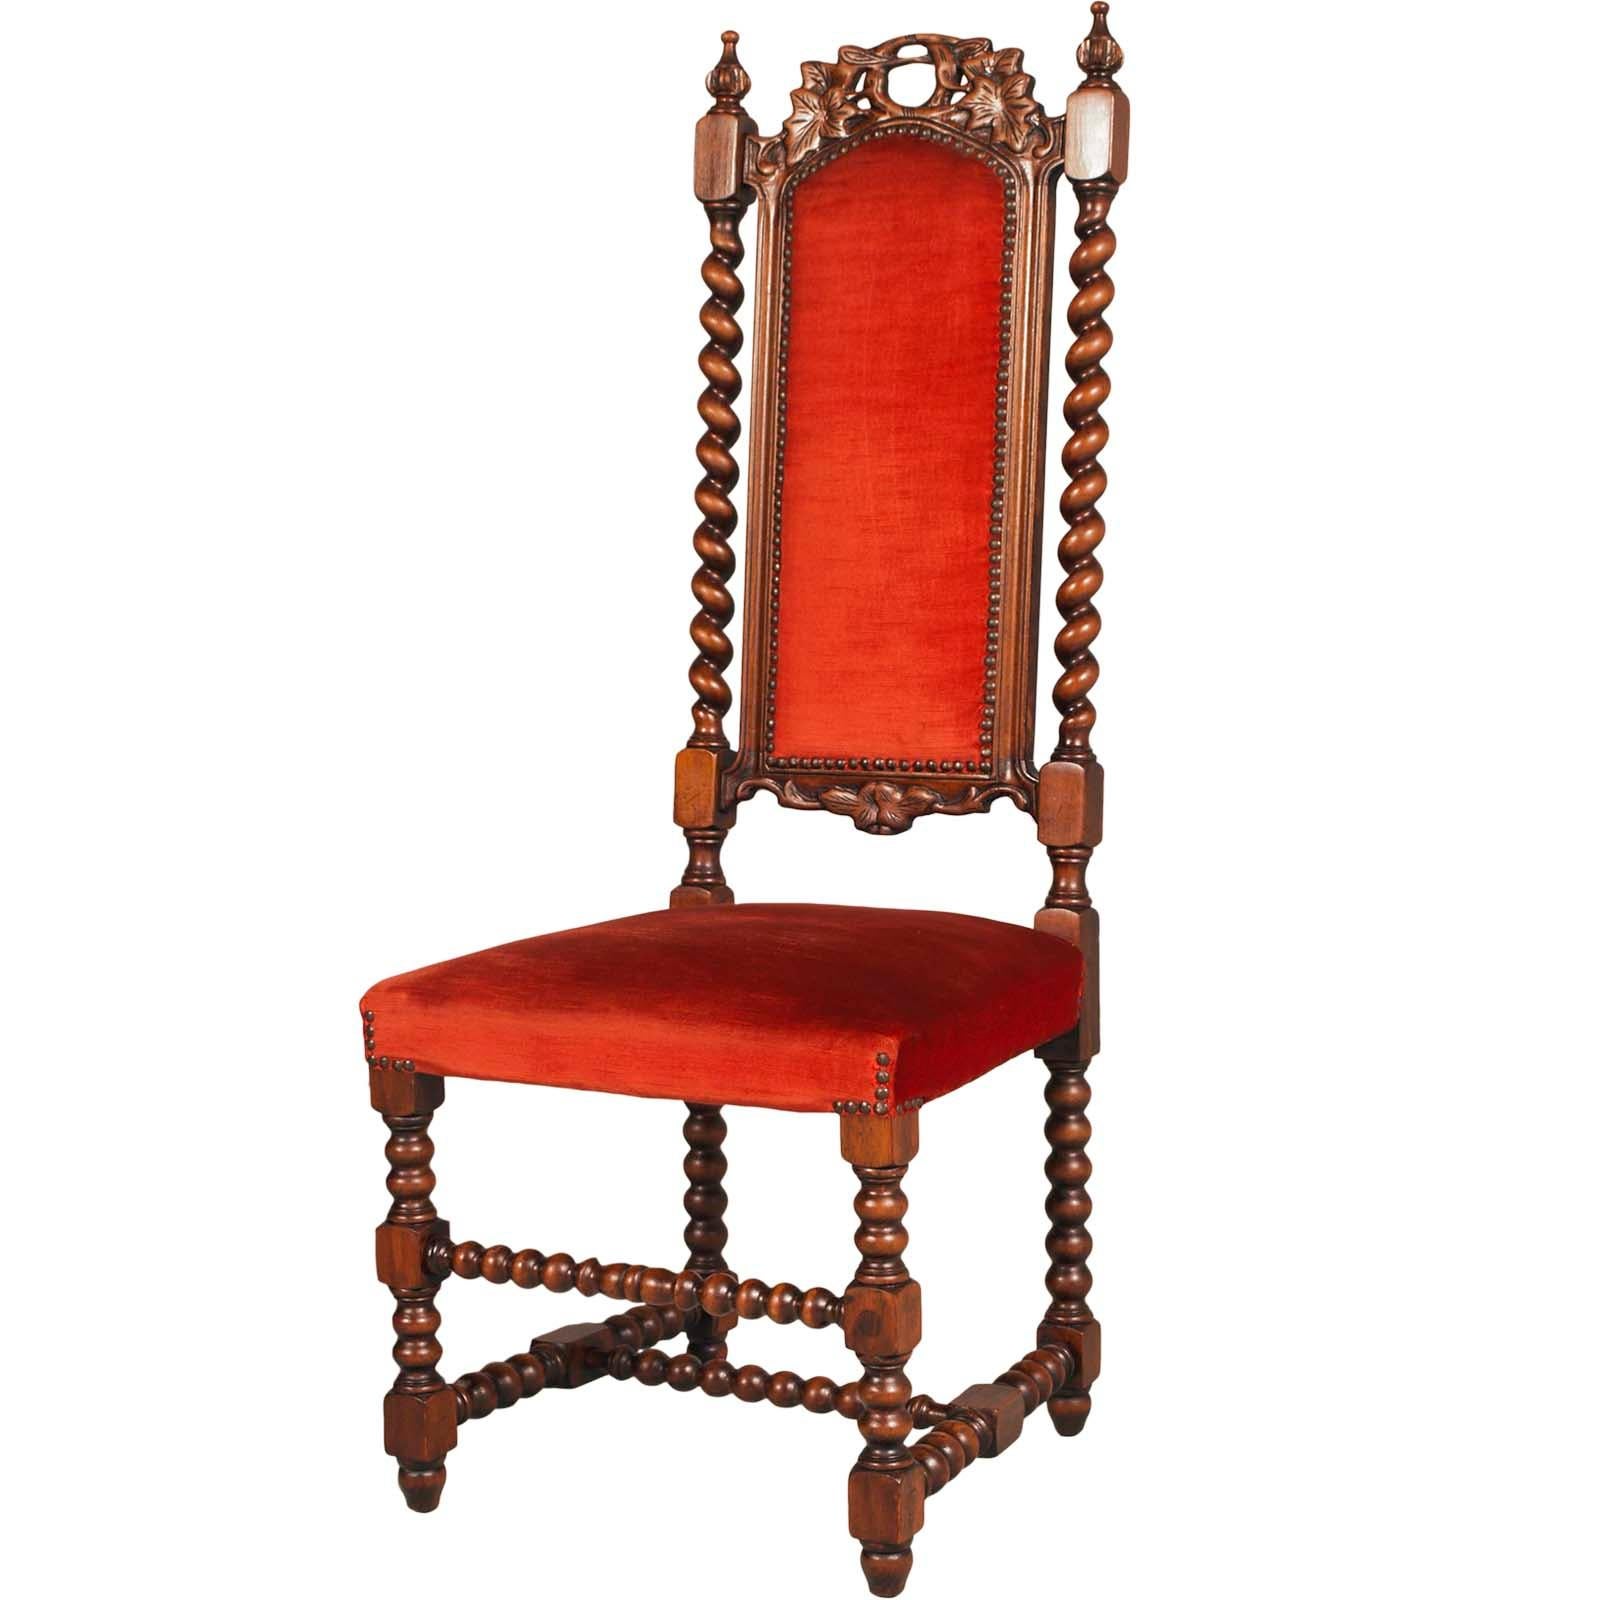 Paire de chaises de salon vénitiennes de l'Atelier Cadorin, datant de la fin du XIXe siècle, en bois de noyer, sculptées à la main.
Les deux chaises sont recouvertes d'un tissu original en velours rouge. L'un des deux sièges a une légère déchirure,